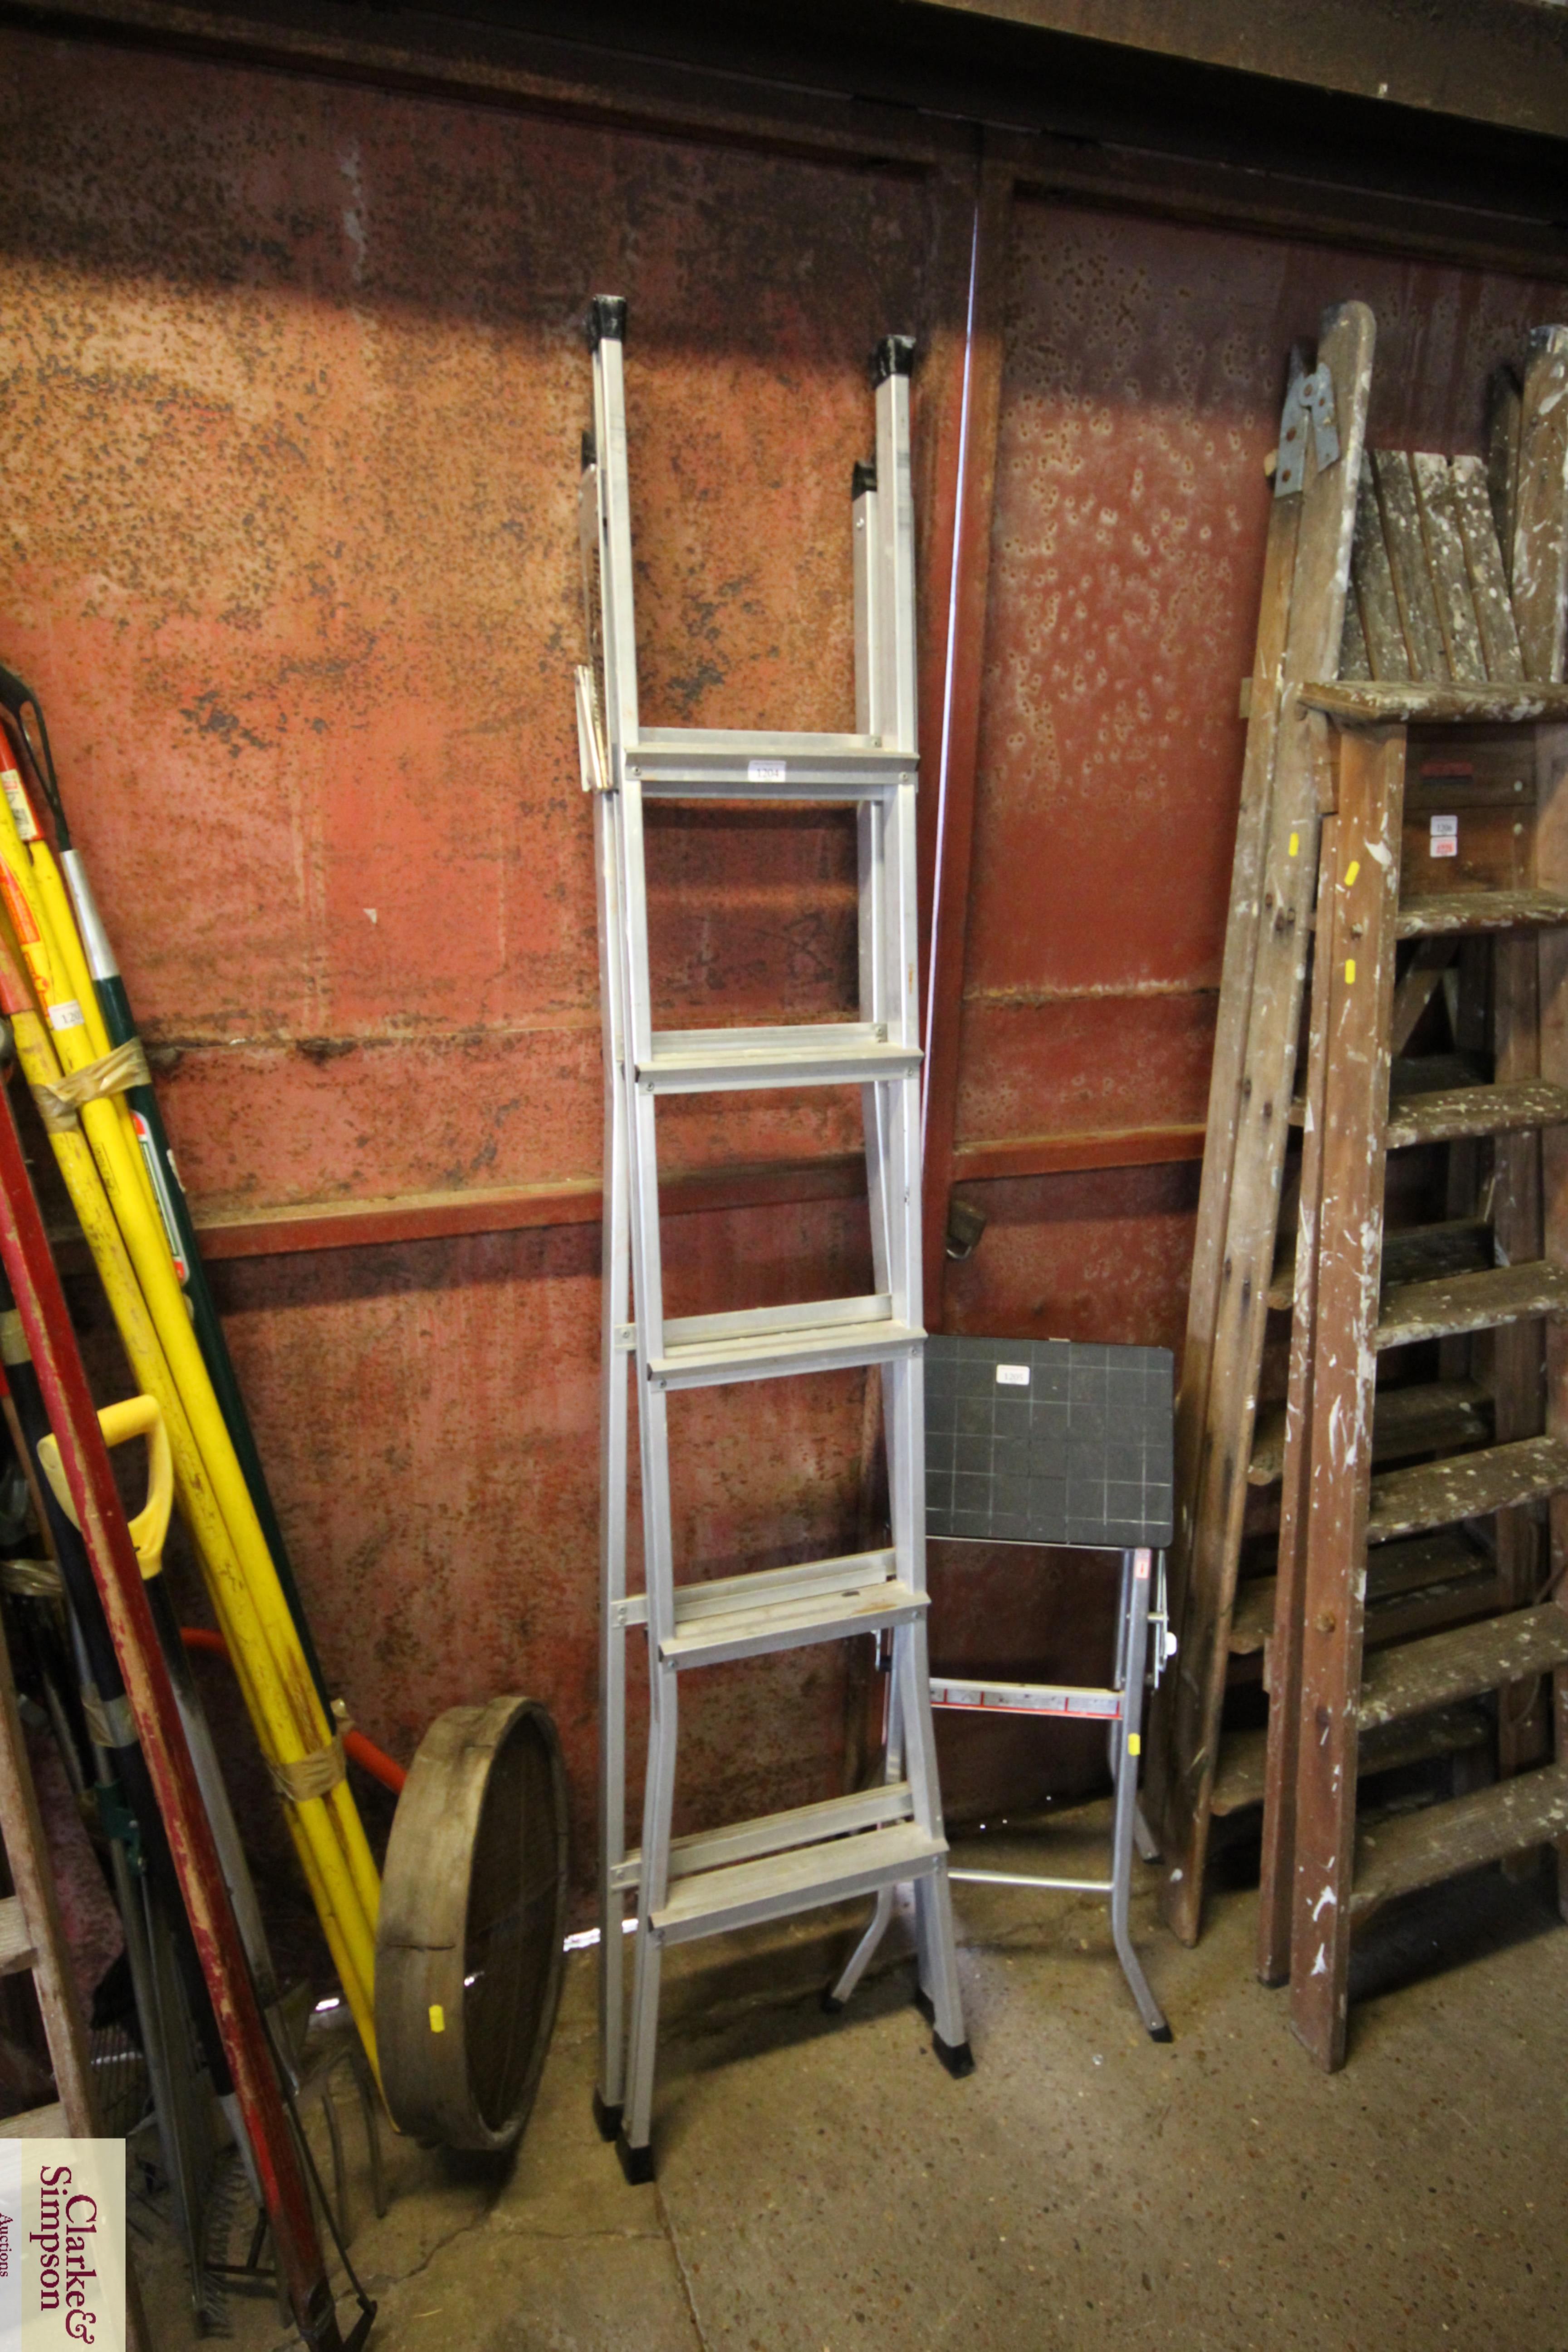 A Black and decker aluminium folding ladder